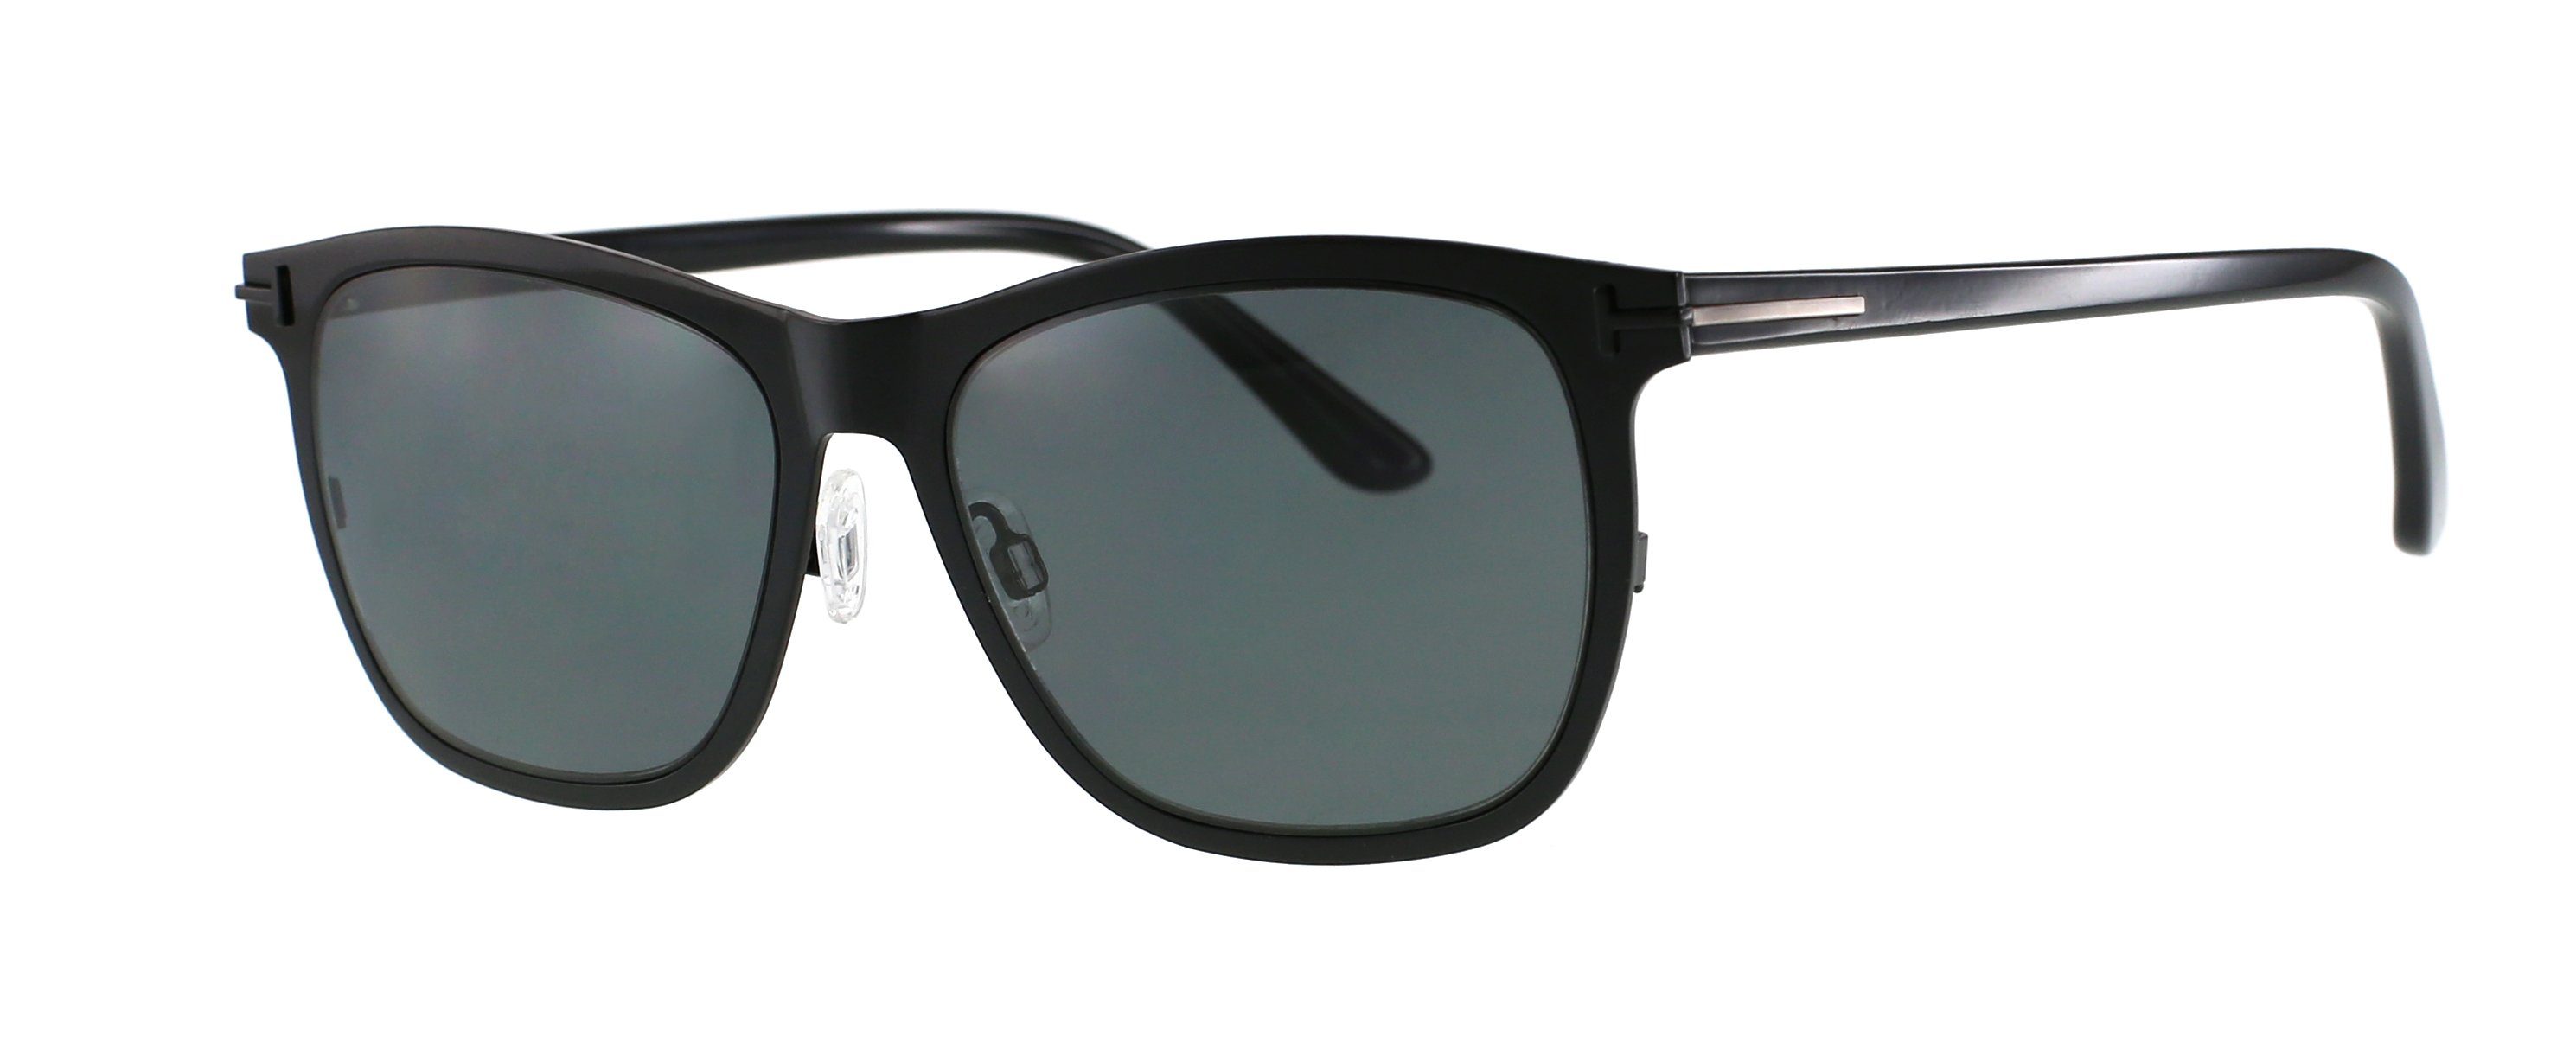 DanCarol Sonnenbrille DC-A18011-hochwertigen Materialien wie: Acetate, Metal gemacht. Acetate, Metal und Edelstahl gemacht.